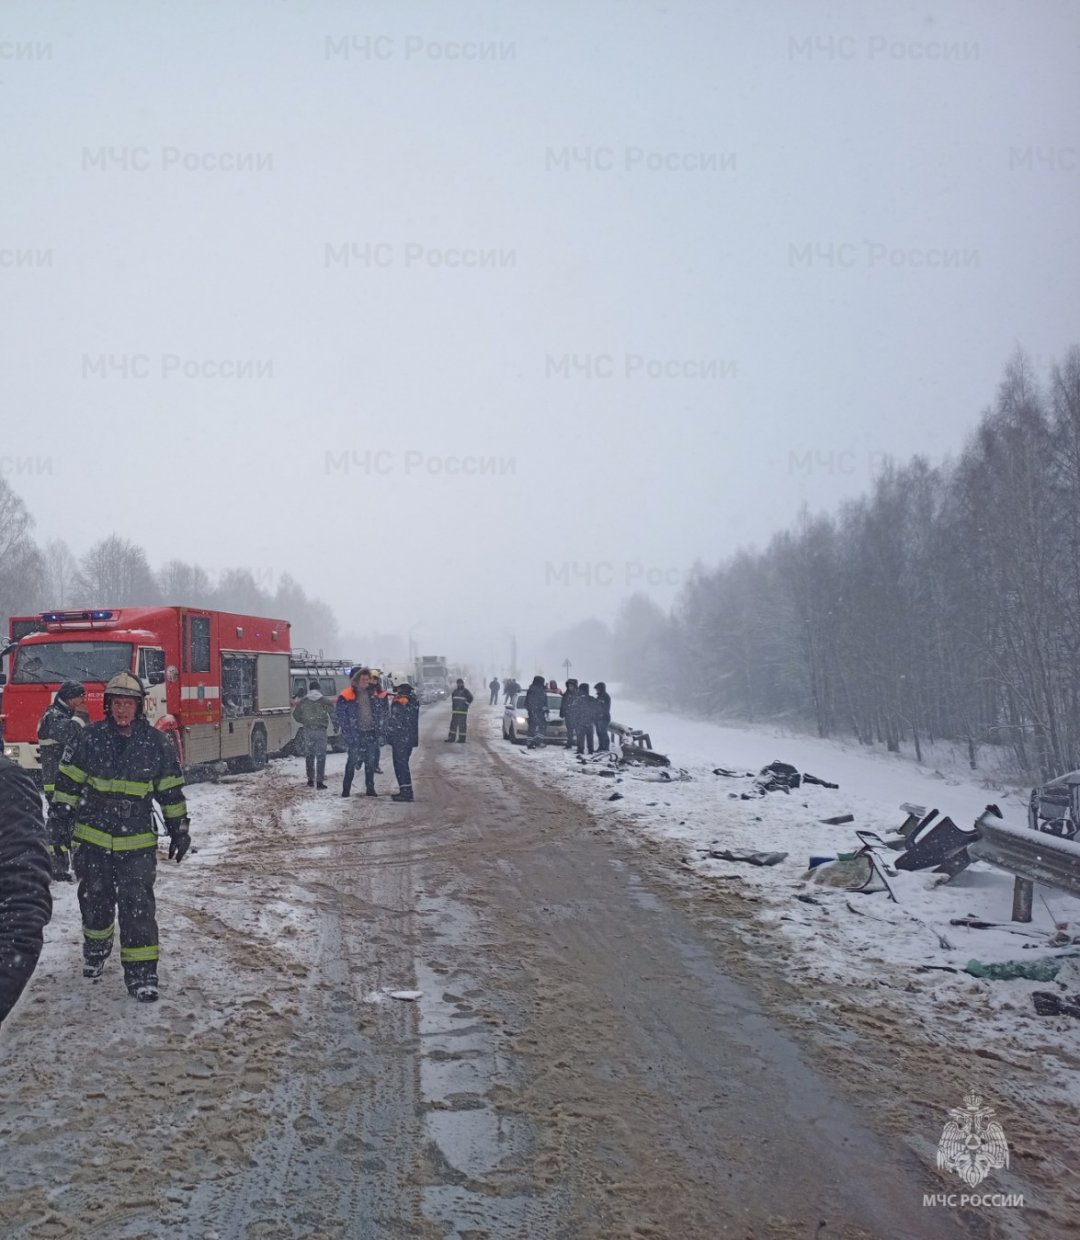 Пожарно - спасательные подразделения МЧС России приняли участие в ликвидации последствий ДТП в Жуковском муниципальном округе